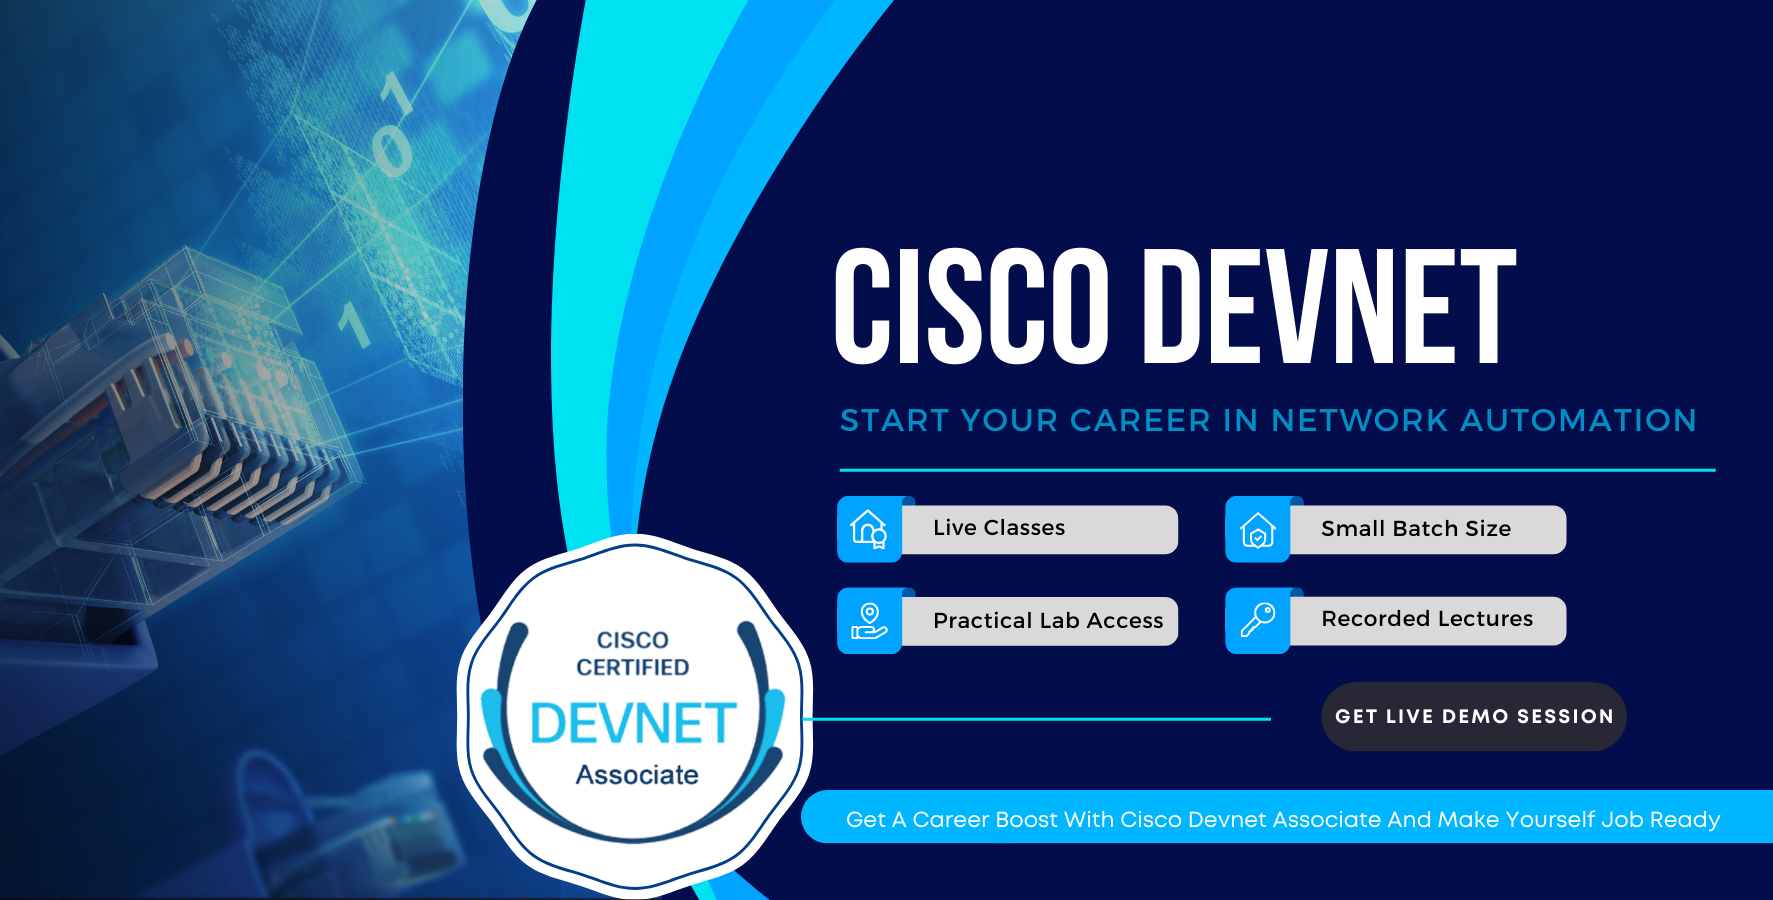 Cisco devnet associate training course